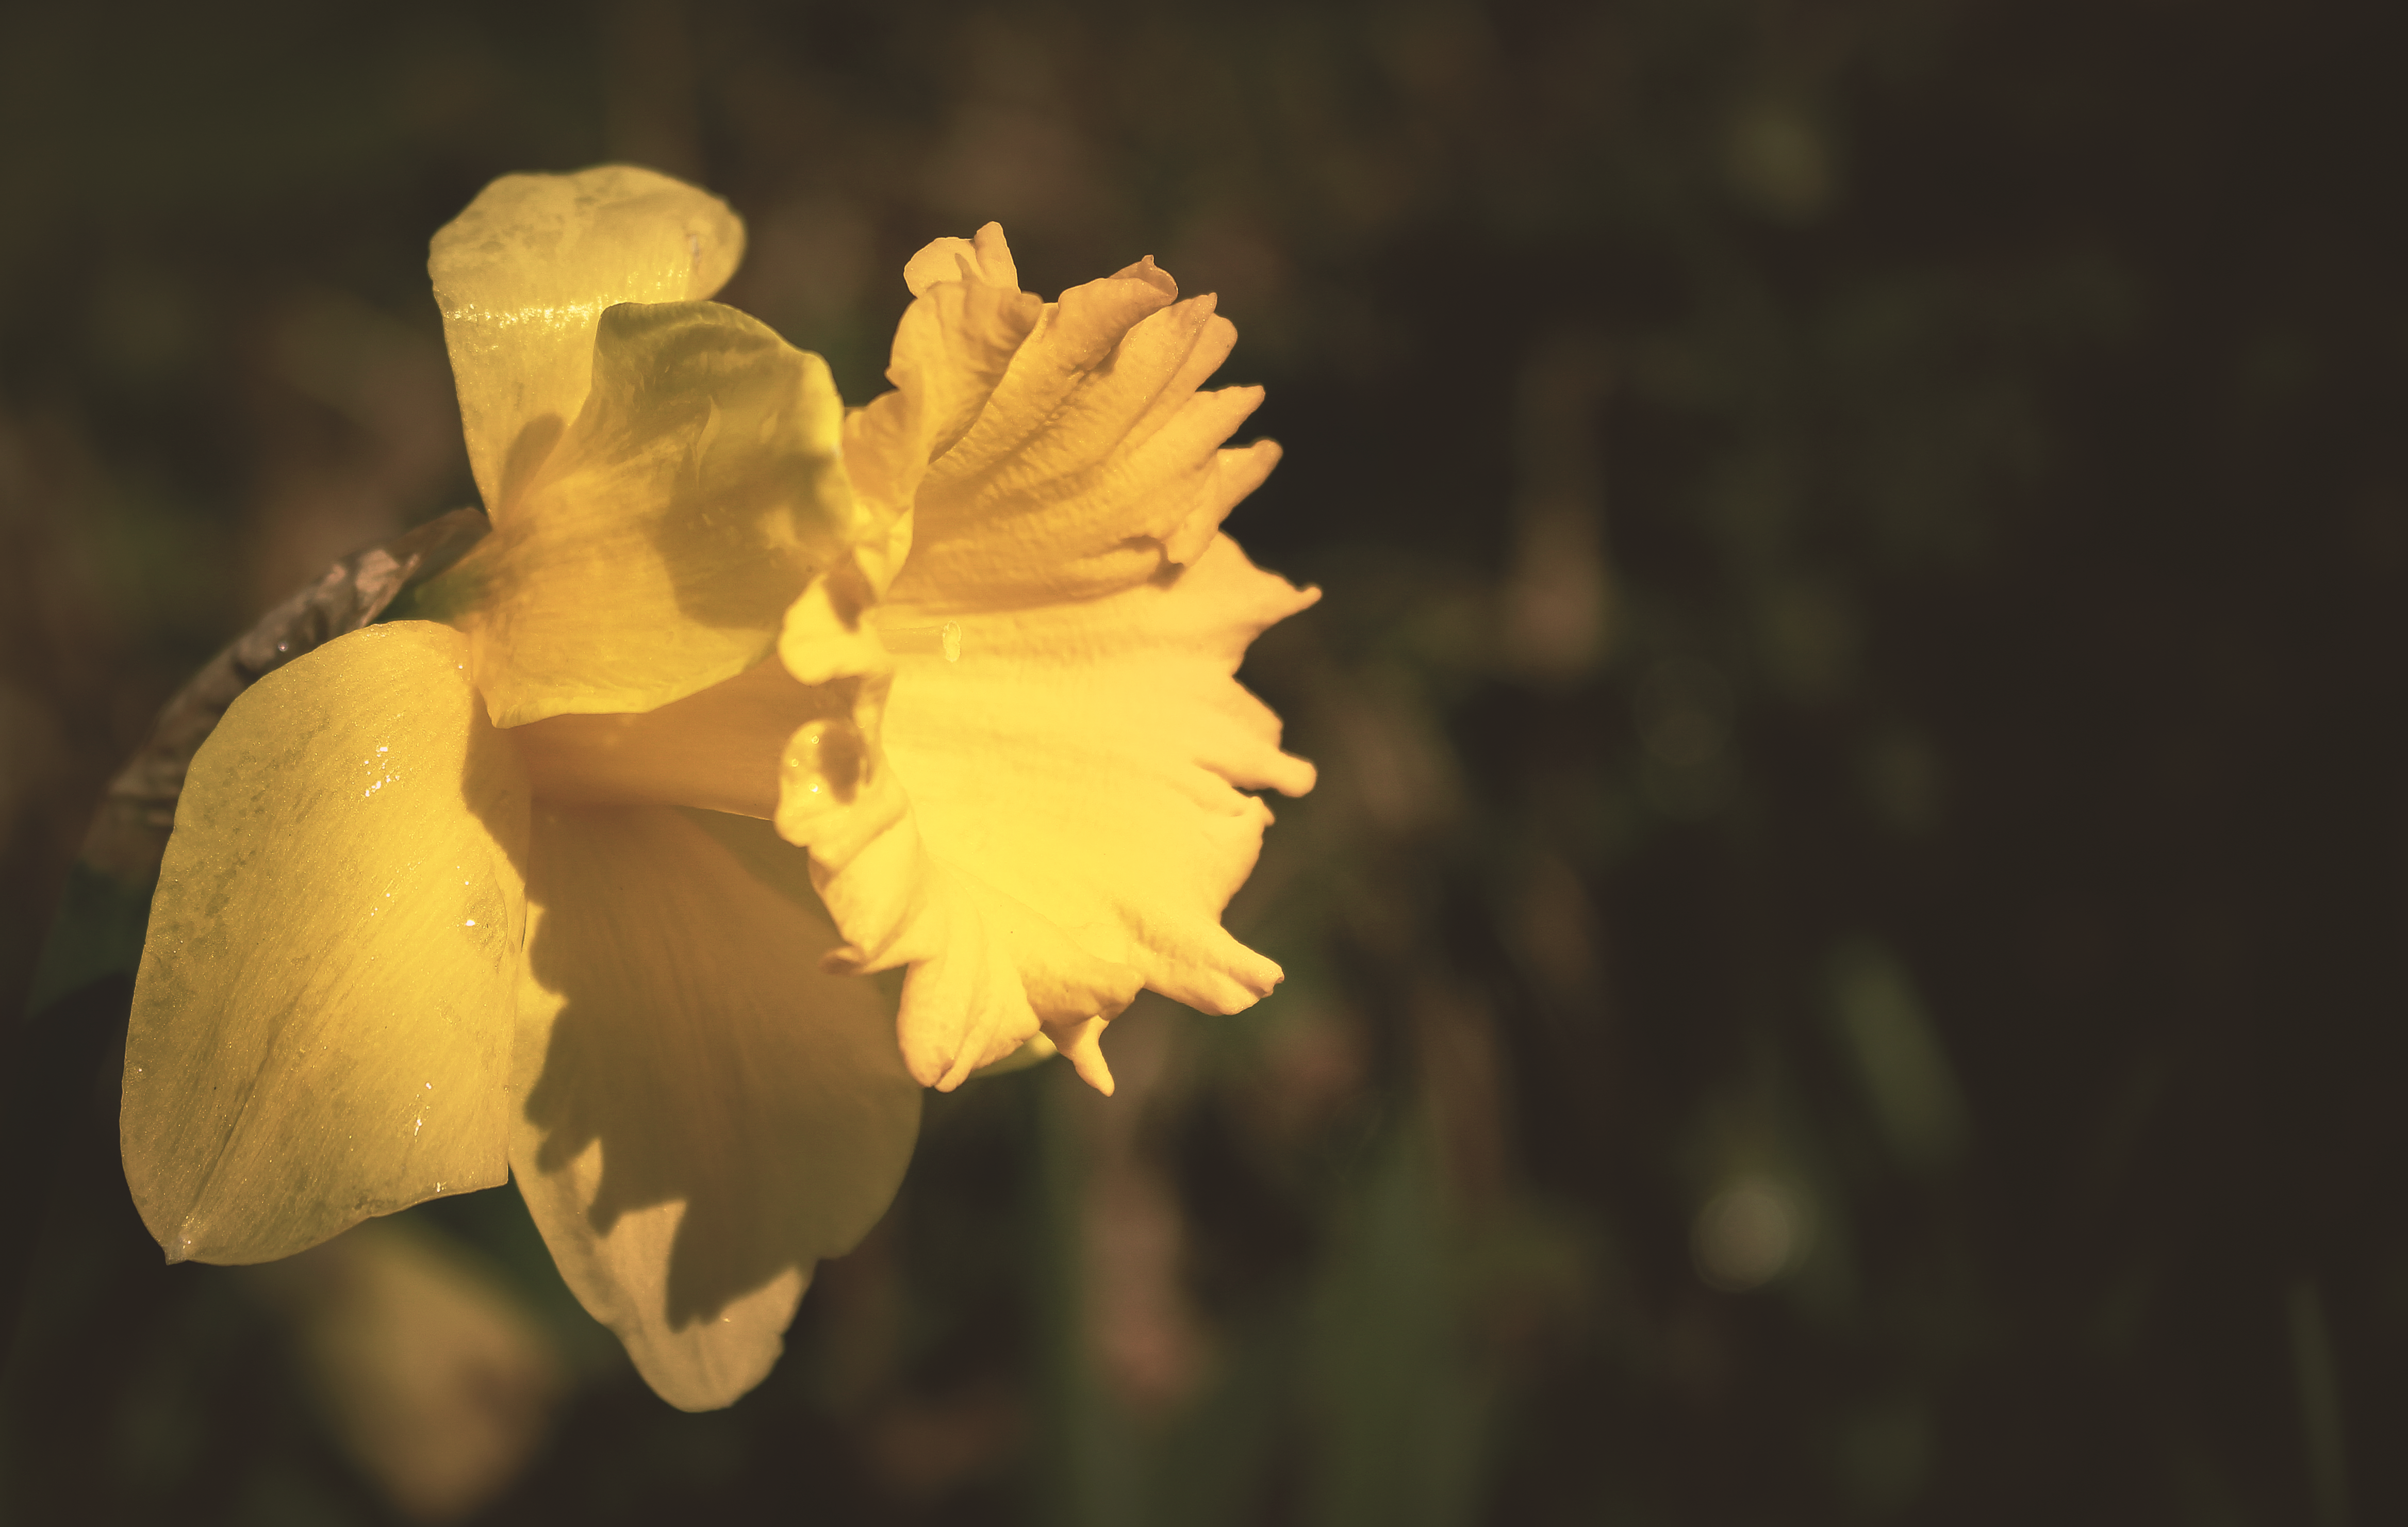 Yellow daffodil flower in tilt shift lens photography